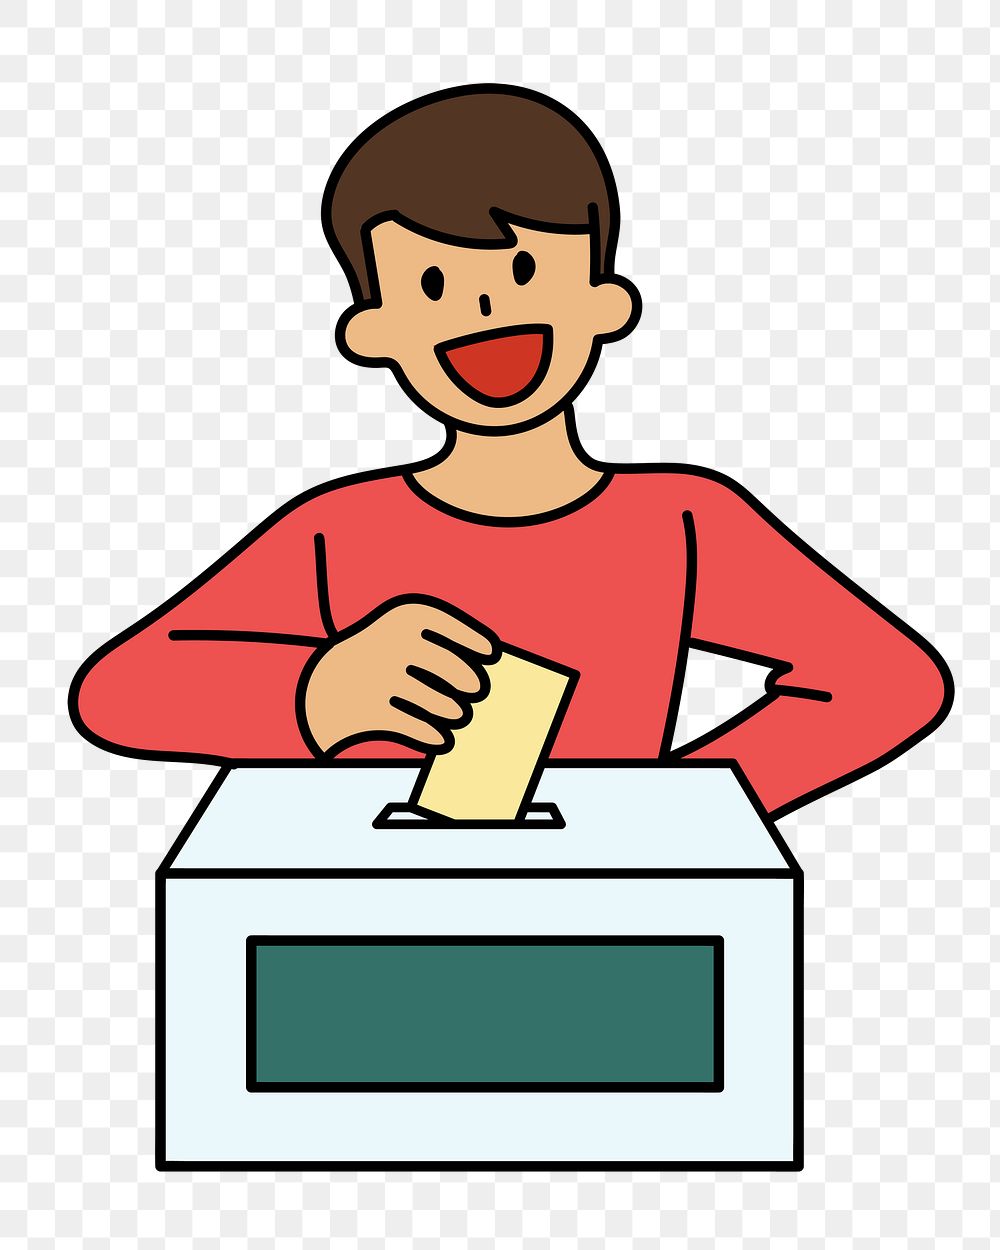 Png man voting doodle, transparent background